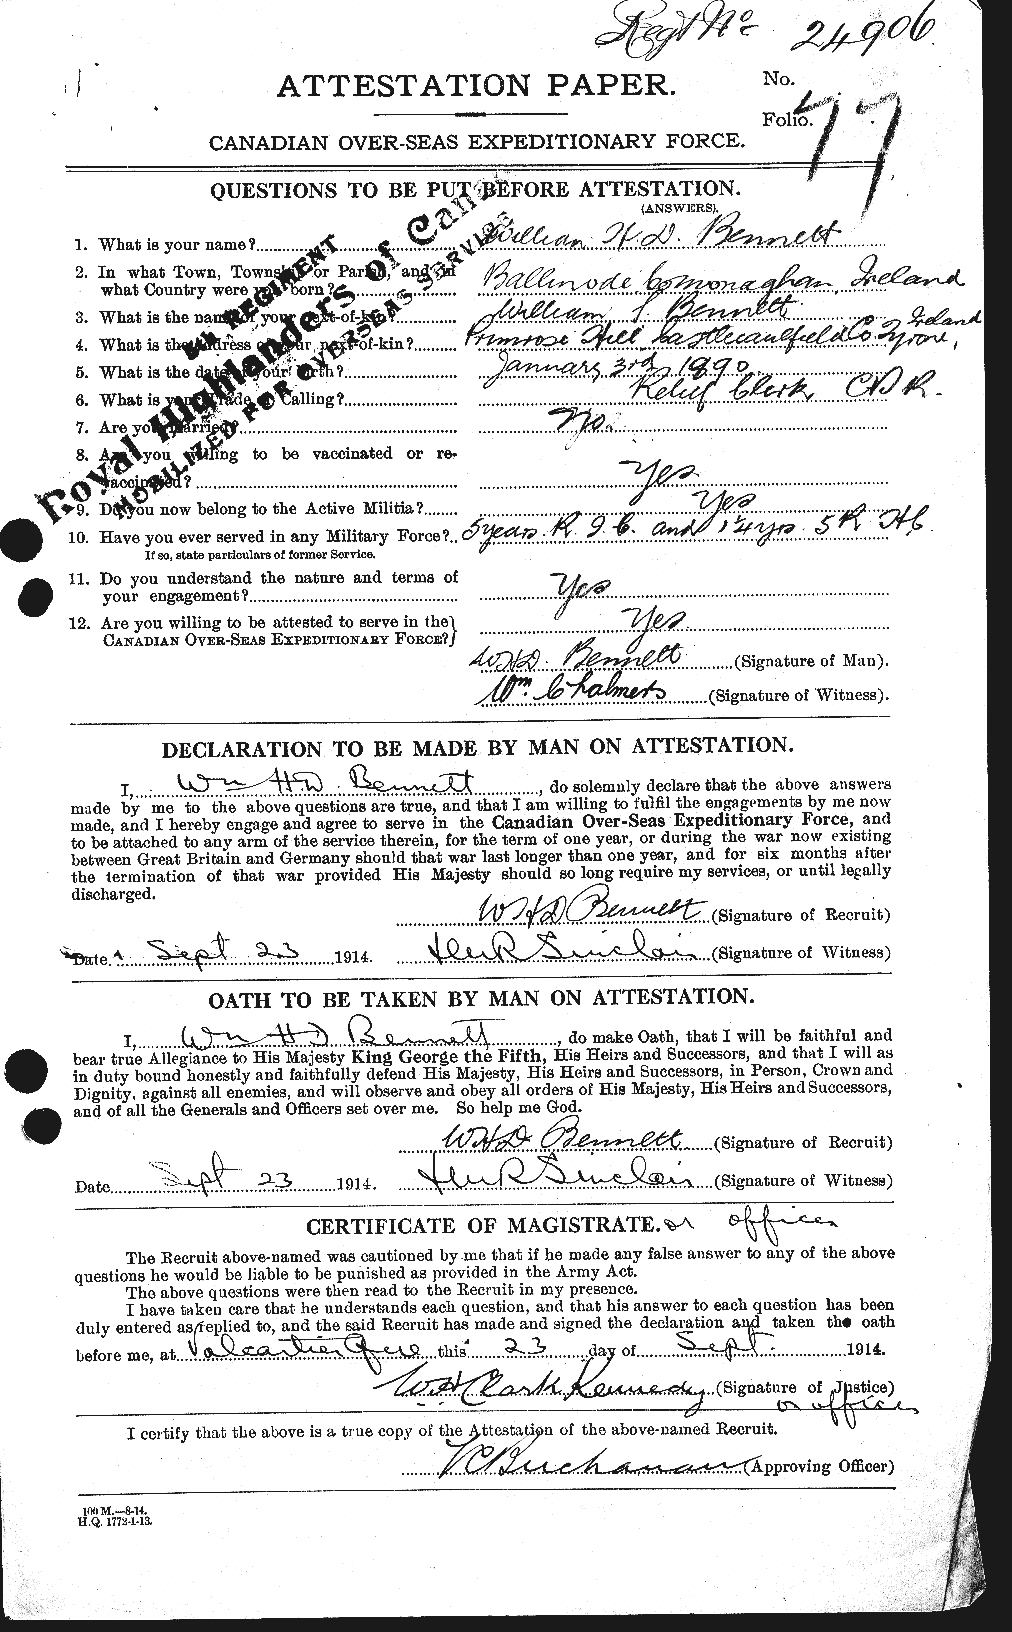 Dossiers du Personnel de la Première Guerre mondiale - CEC 236549a